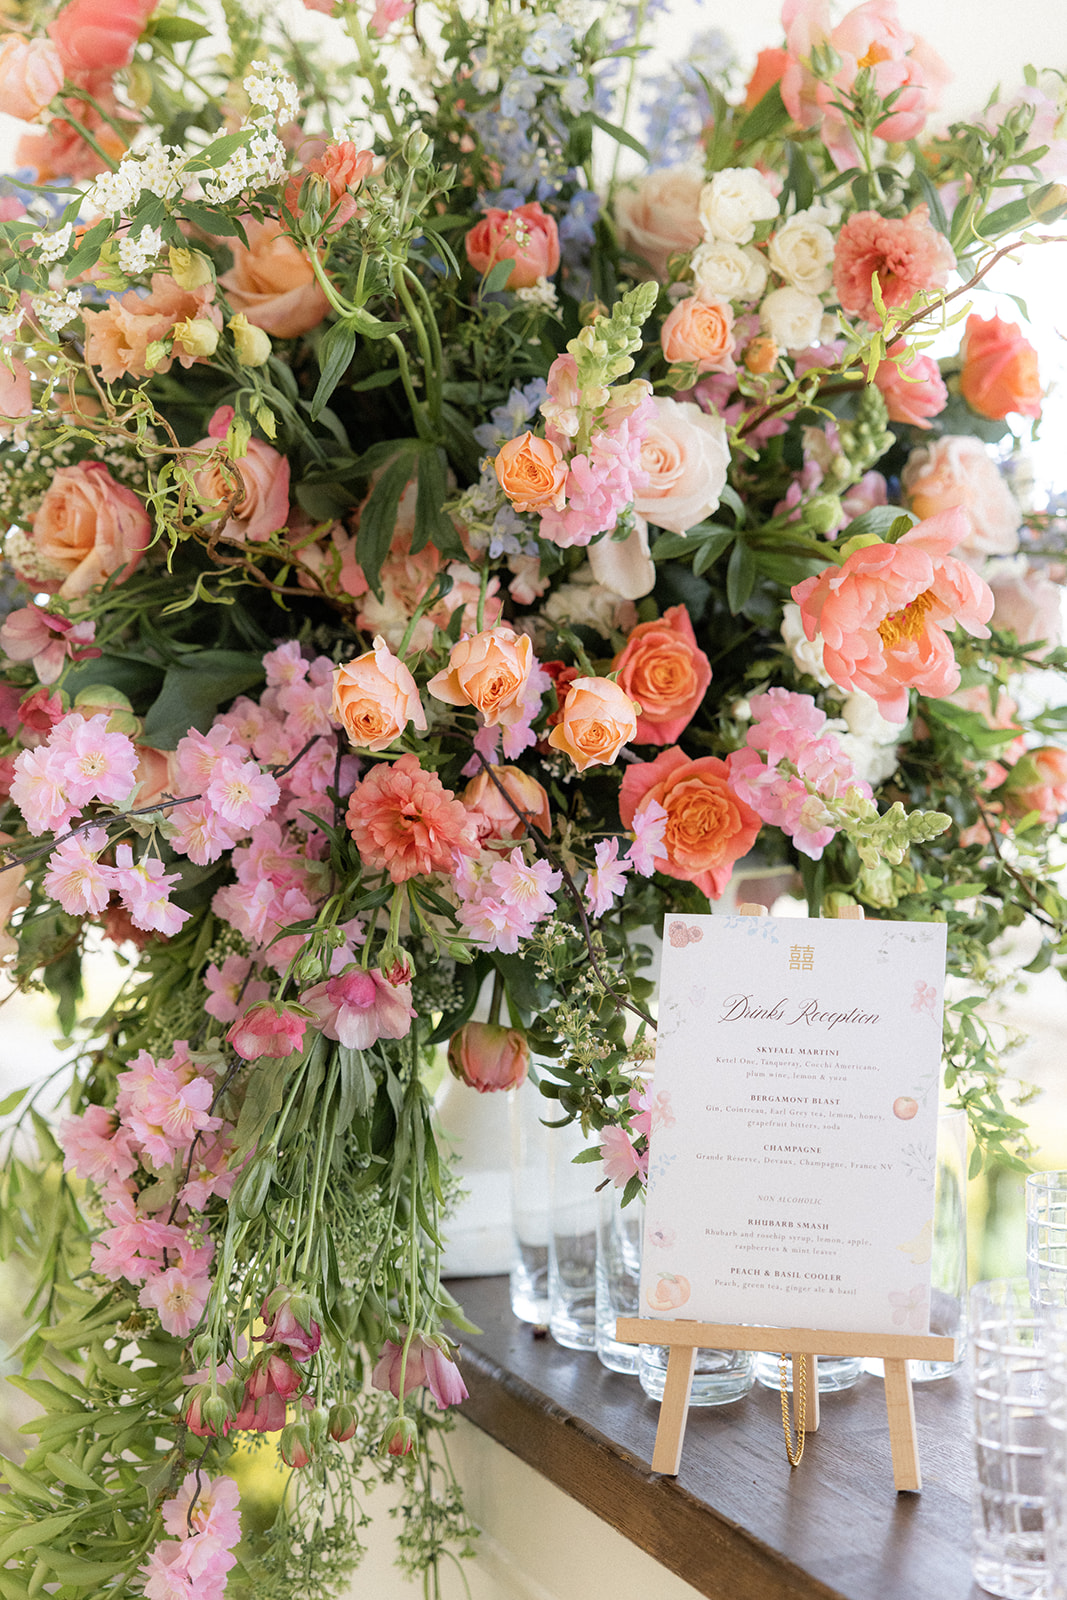 cocktail menu in front of floral display - wedding designer